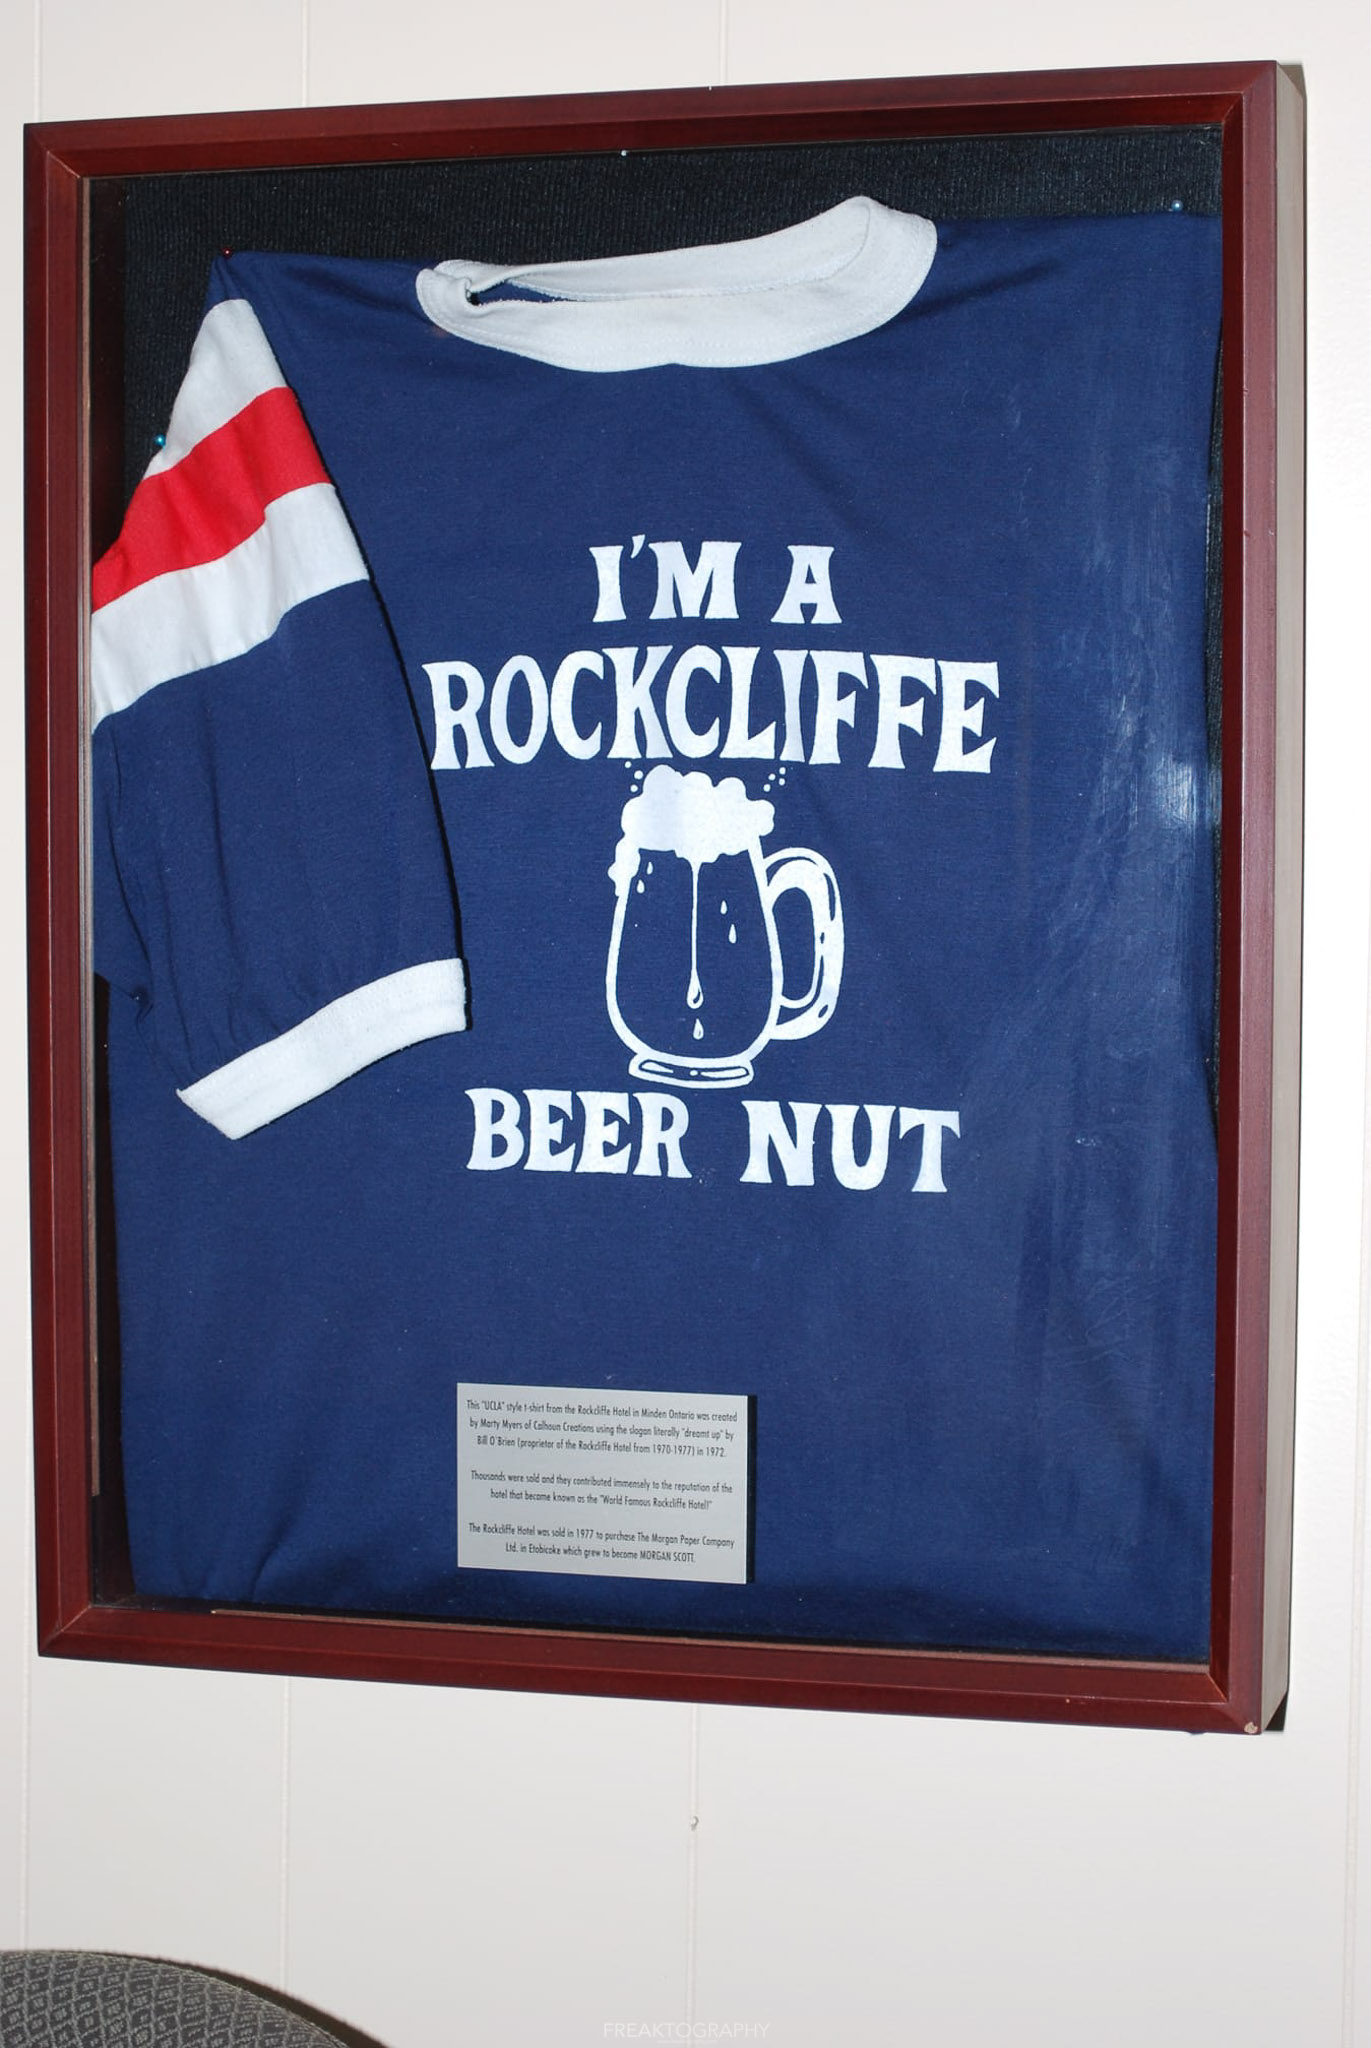 Rockcliffe tavern merchandise